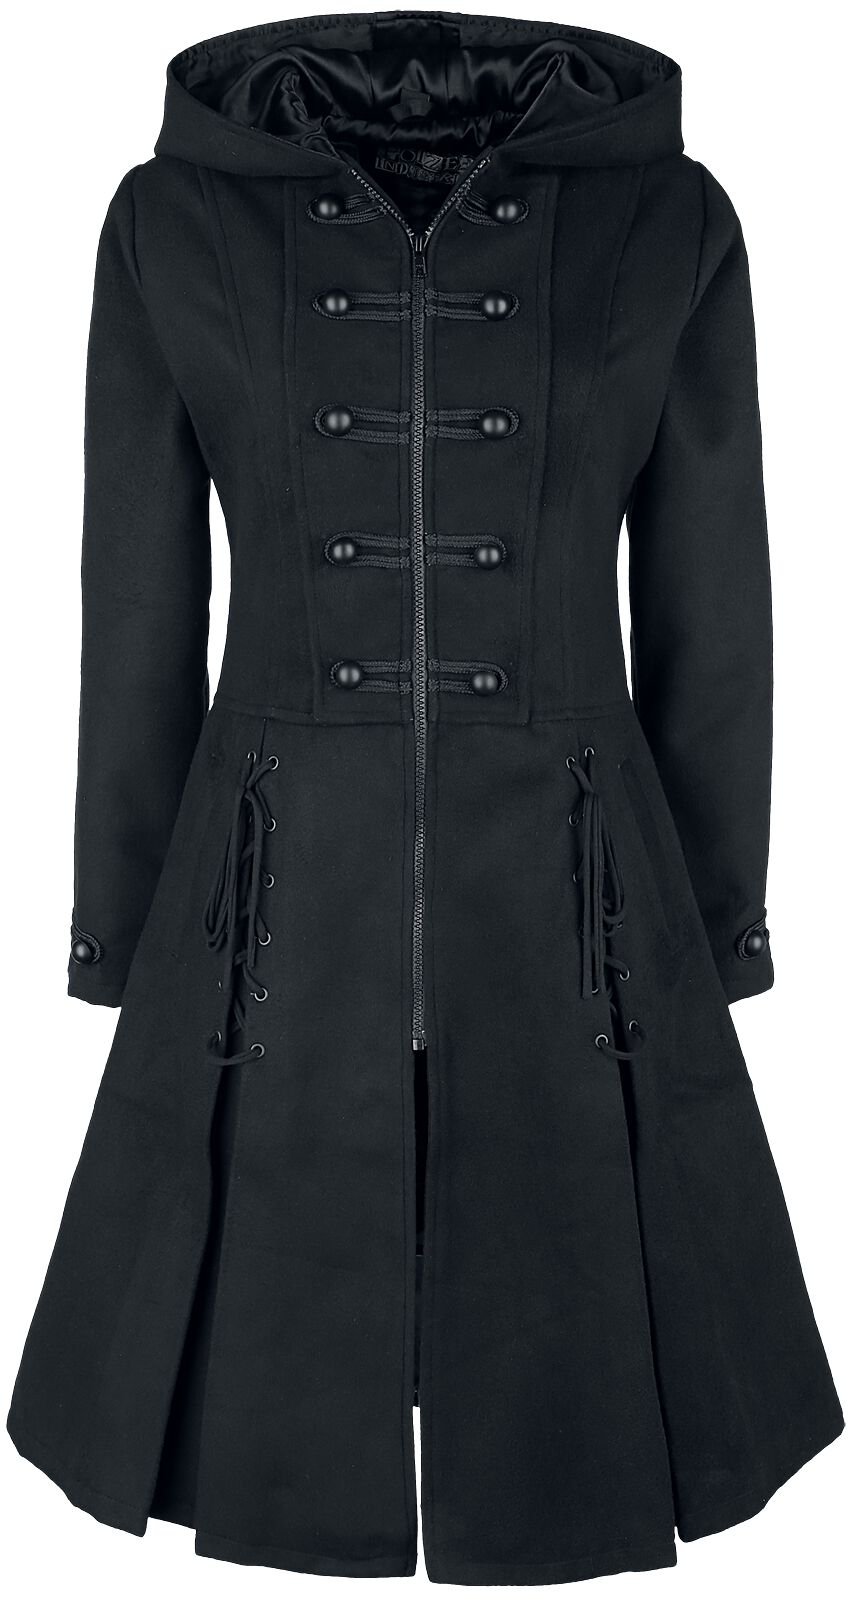 Poizen Industries - Gothic Trenchcoat - Haunt Coat - S bis XXL - für Damen - Größe XXL - schwarz